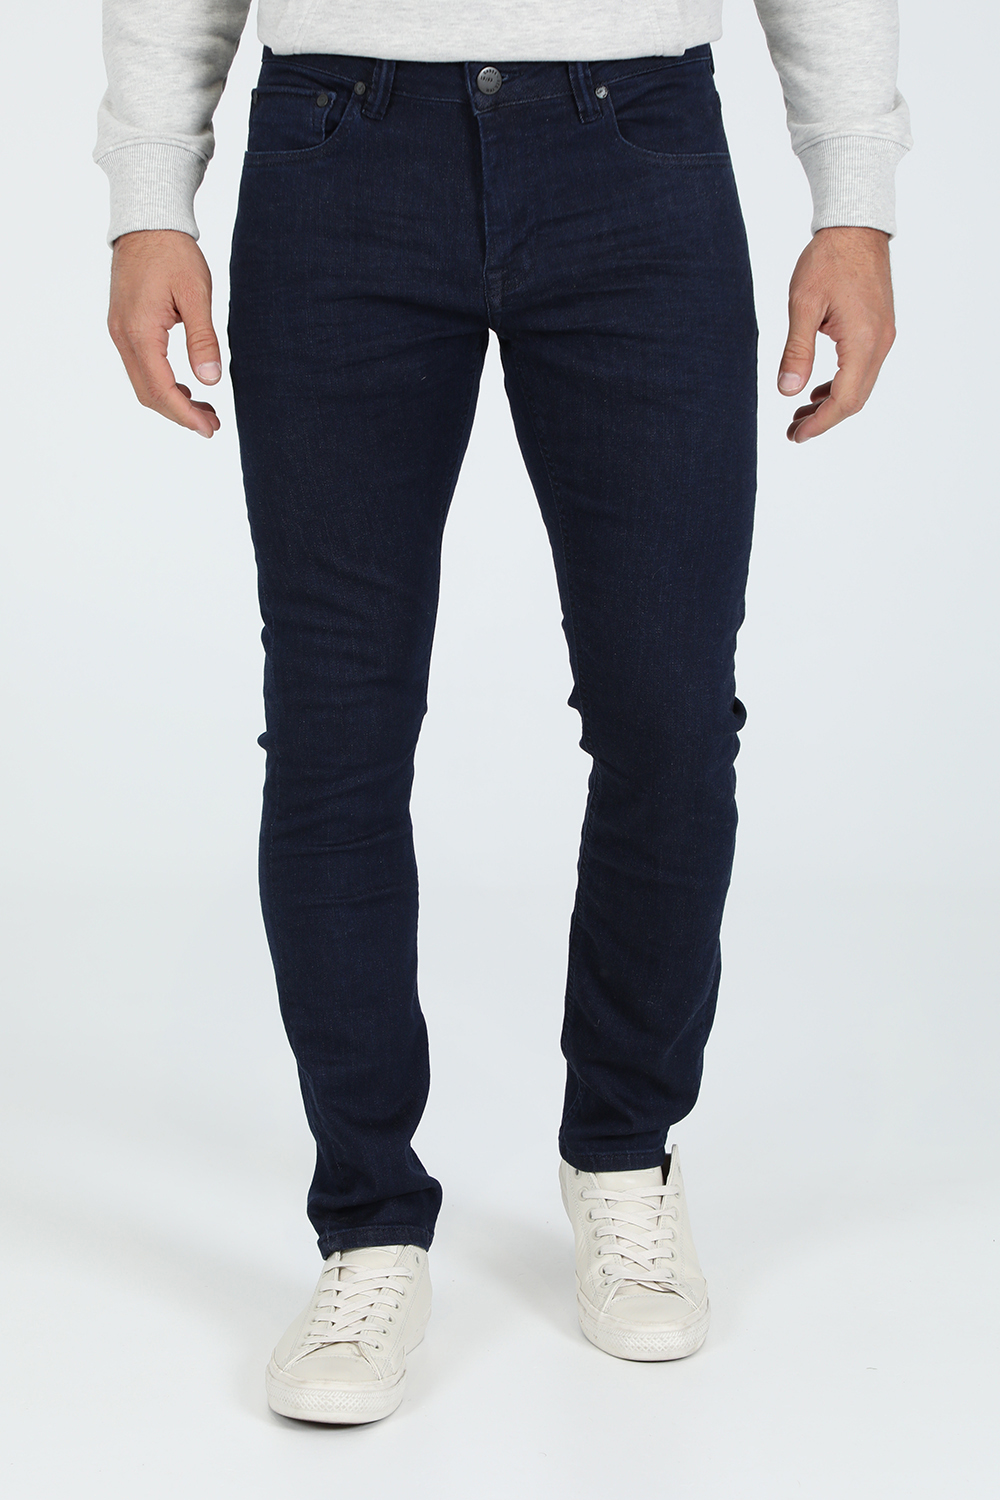 Ανδρικά/Ρούχα/Τζίν/Skinny GABBA - Ανδρικό jean παντελόνι GABBA Jones K3869 μπλε